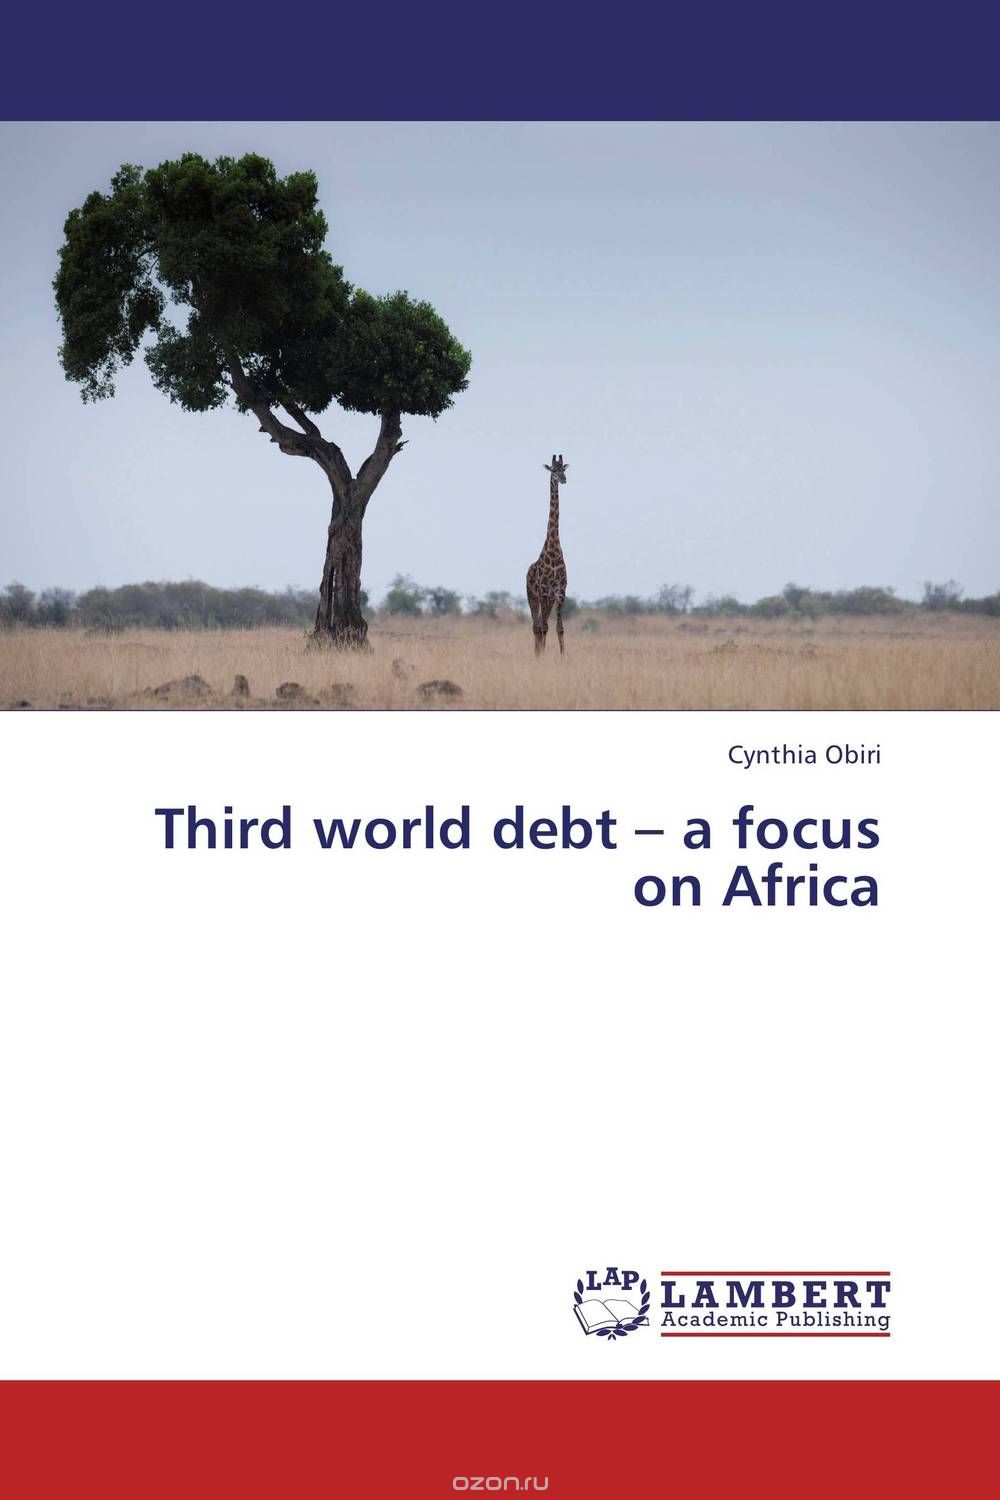 Скачать книгу "Third world debt – a focus on Africa"